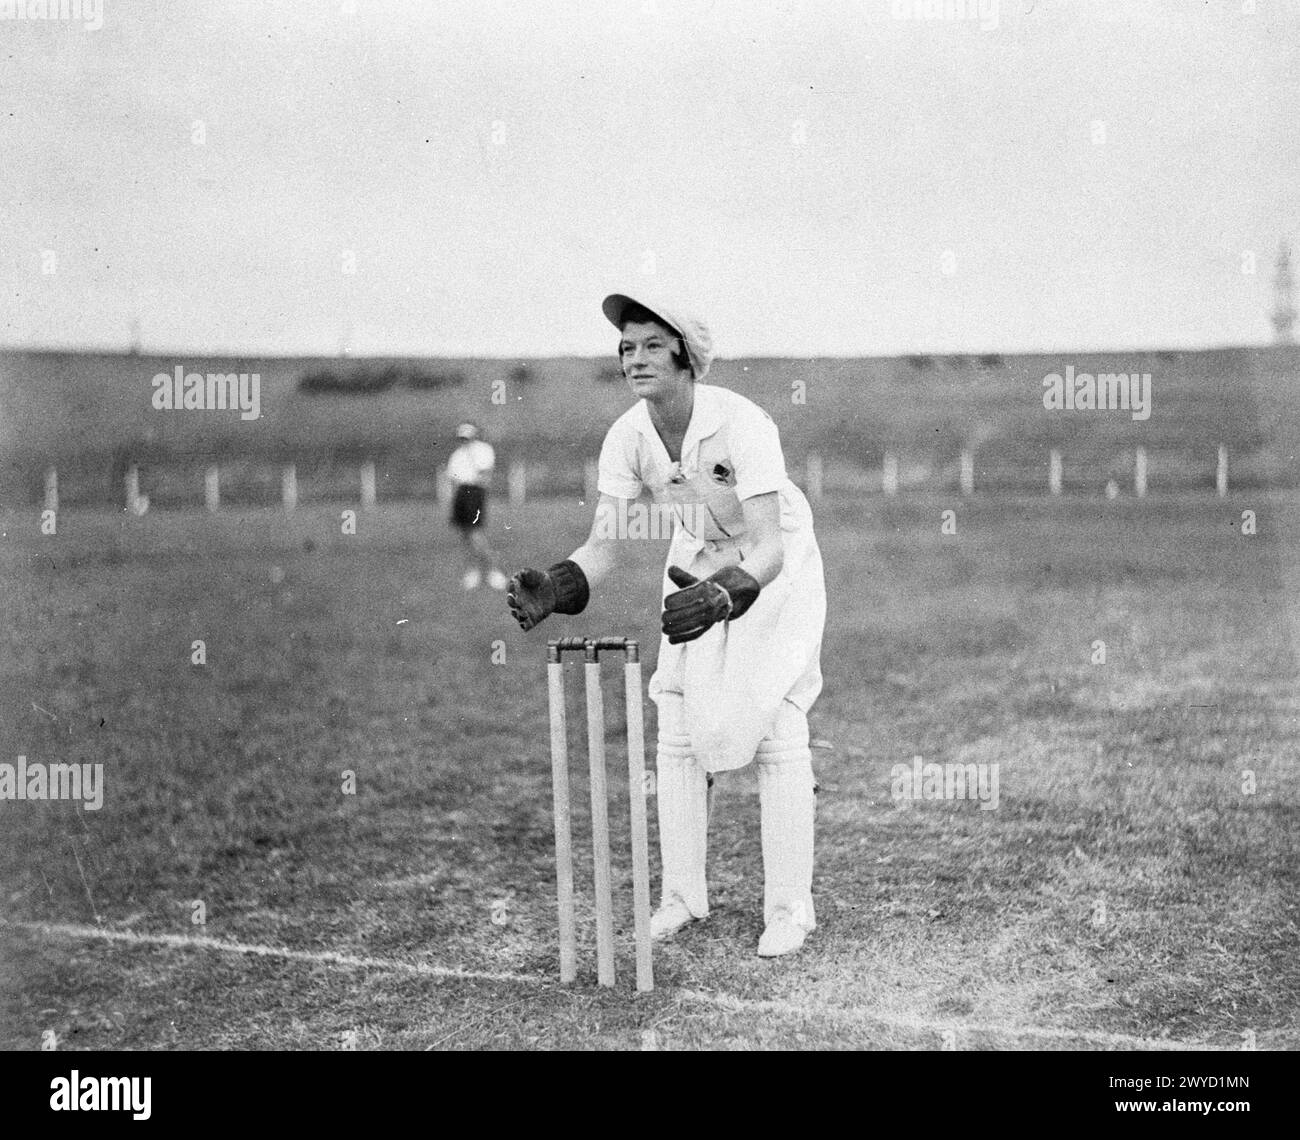 Archive Australian Sport Photography: Women's Cricket, Moore Park, Sydney Australia. Donna custode di wicket in posizione oltre i ceppi. circa 1930 anni Crediti fotografici: Sam Hood. Foto Stock